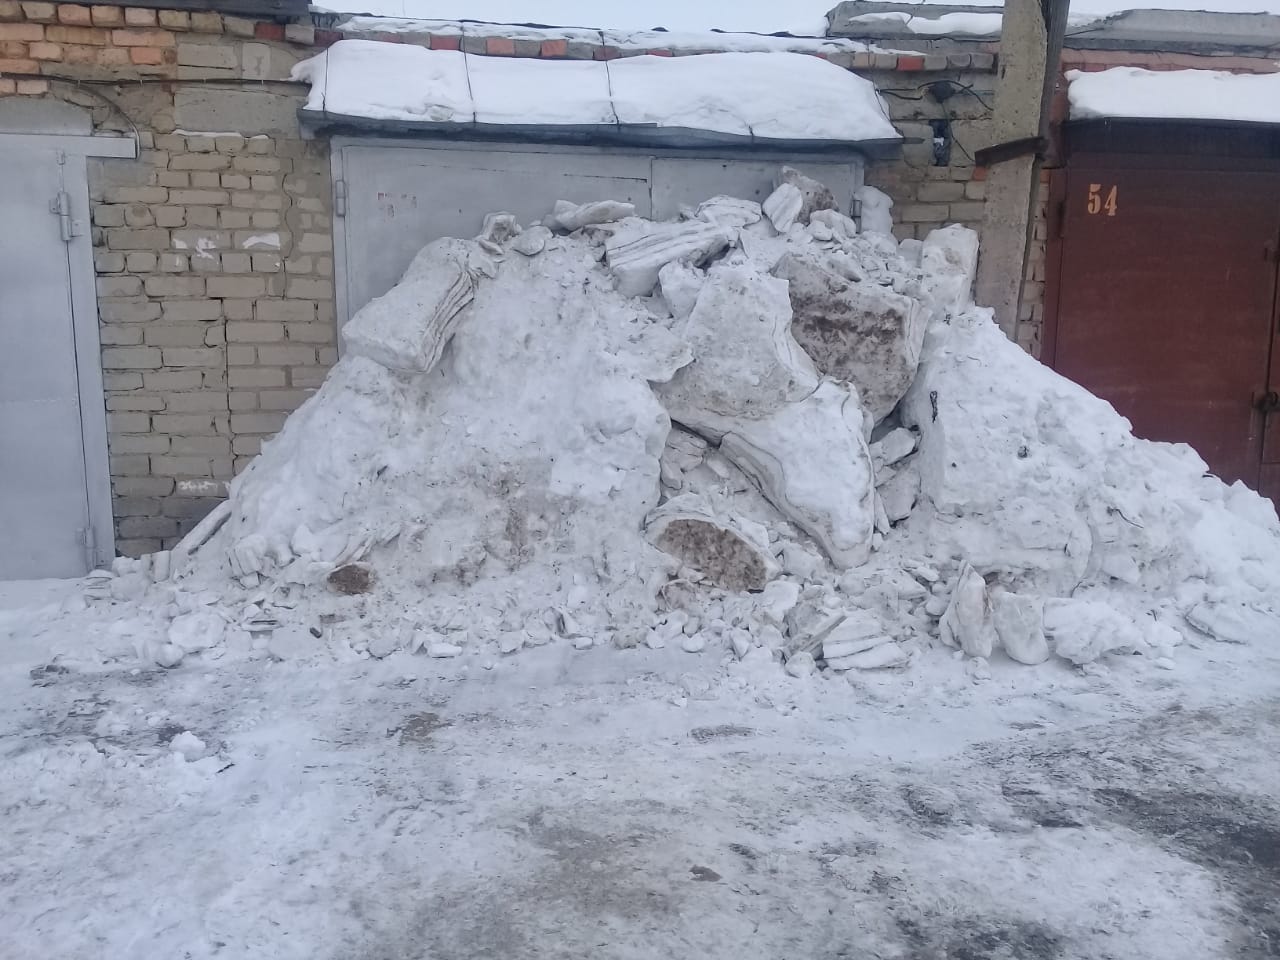 В кооперативе «Березка» председатель засыпает снегом гаражи должников